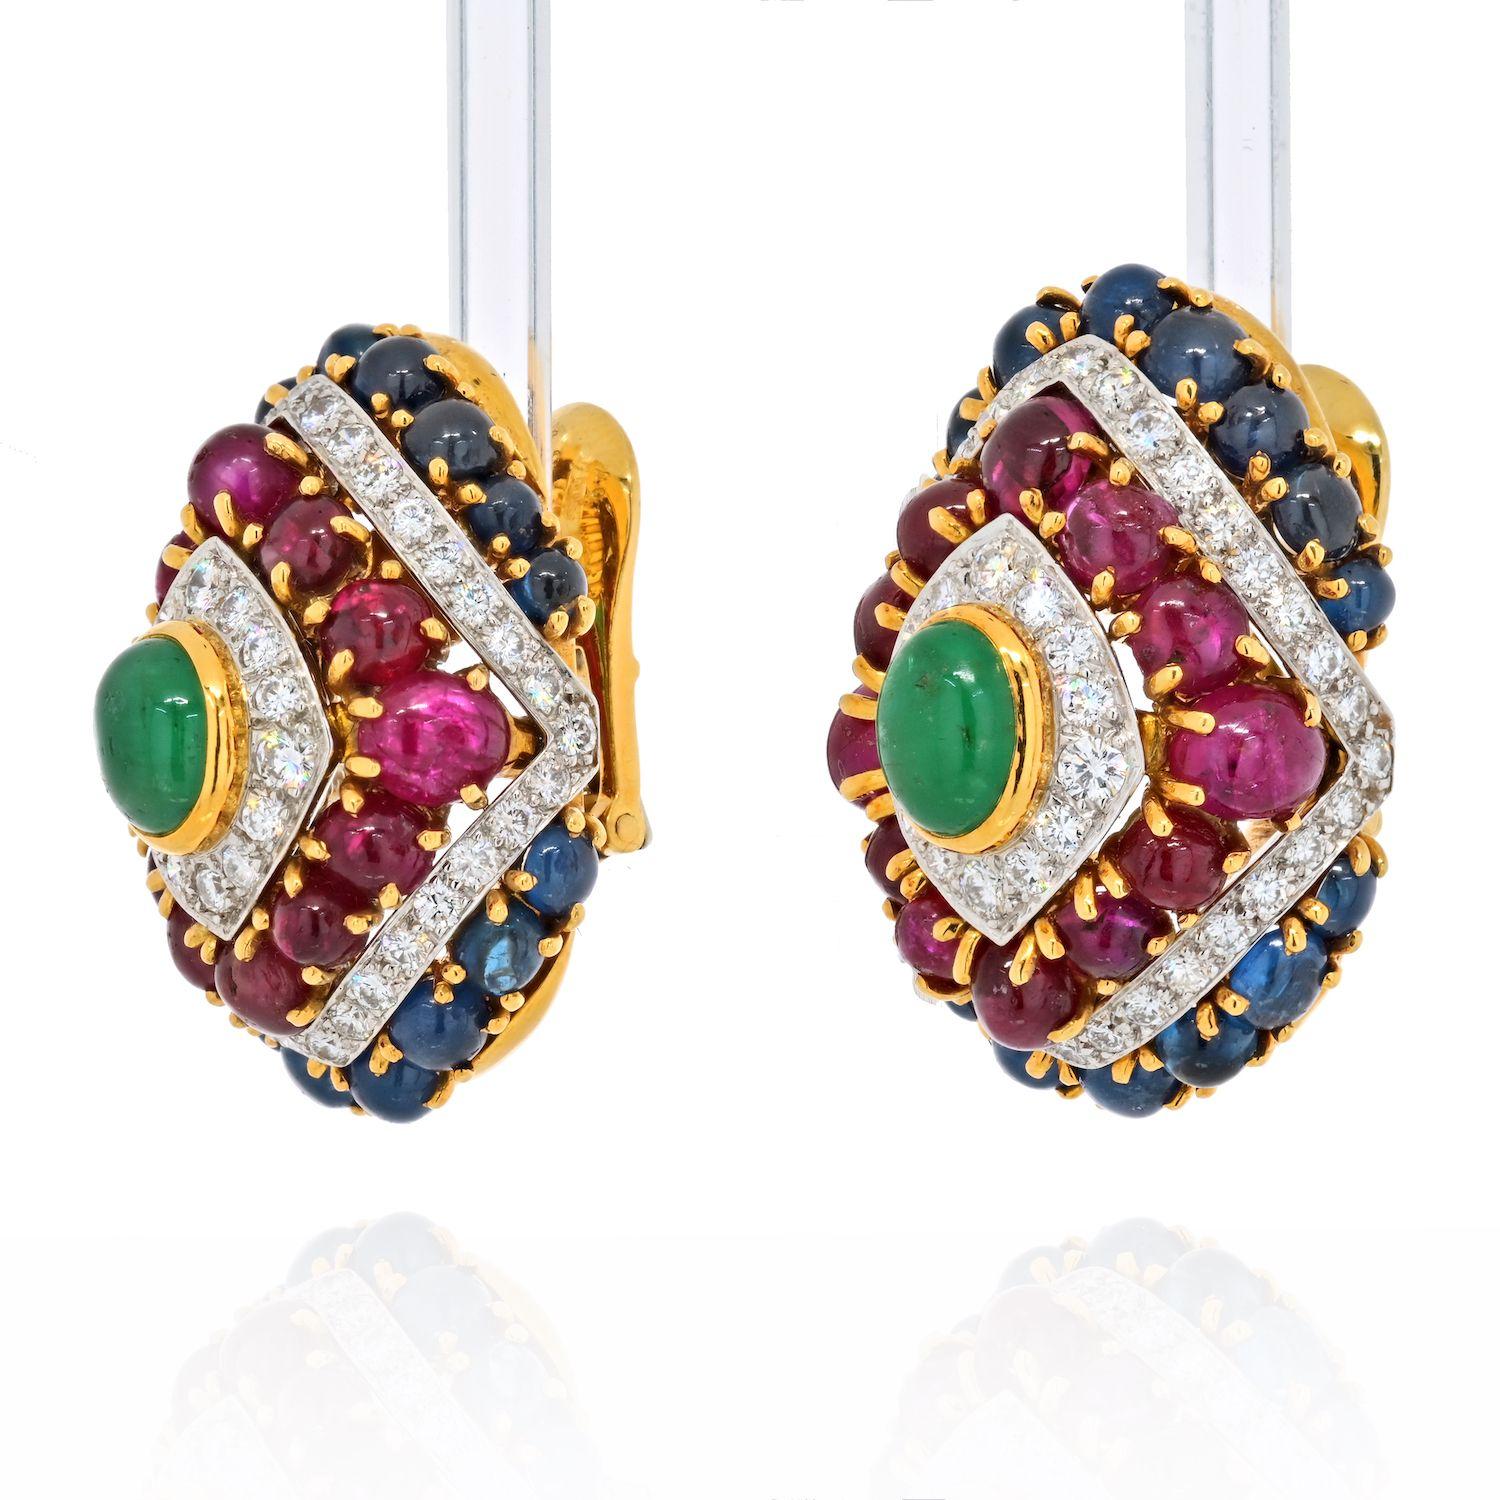 Diese außergewöhnlichen Ohrringe von David Webb sind mit farbigen Steinen wie Rubinen, Saphiren und Smaragden besetzt und zusätzlich mit Diamanten akzentuiert. Man kann diese Ohrringe nicht übersehen, wenn die Trägerin sie trägt. Sie sind absolut